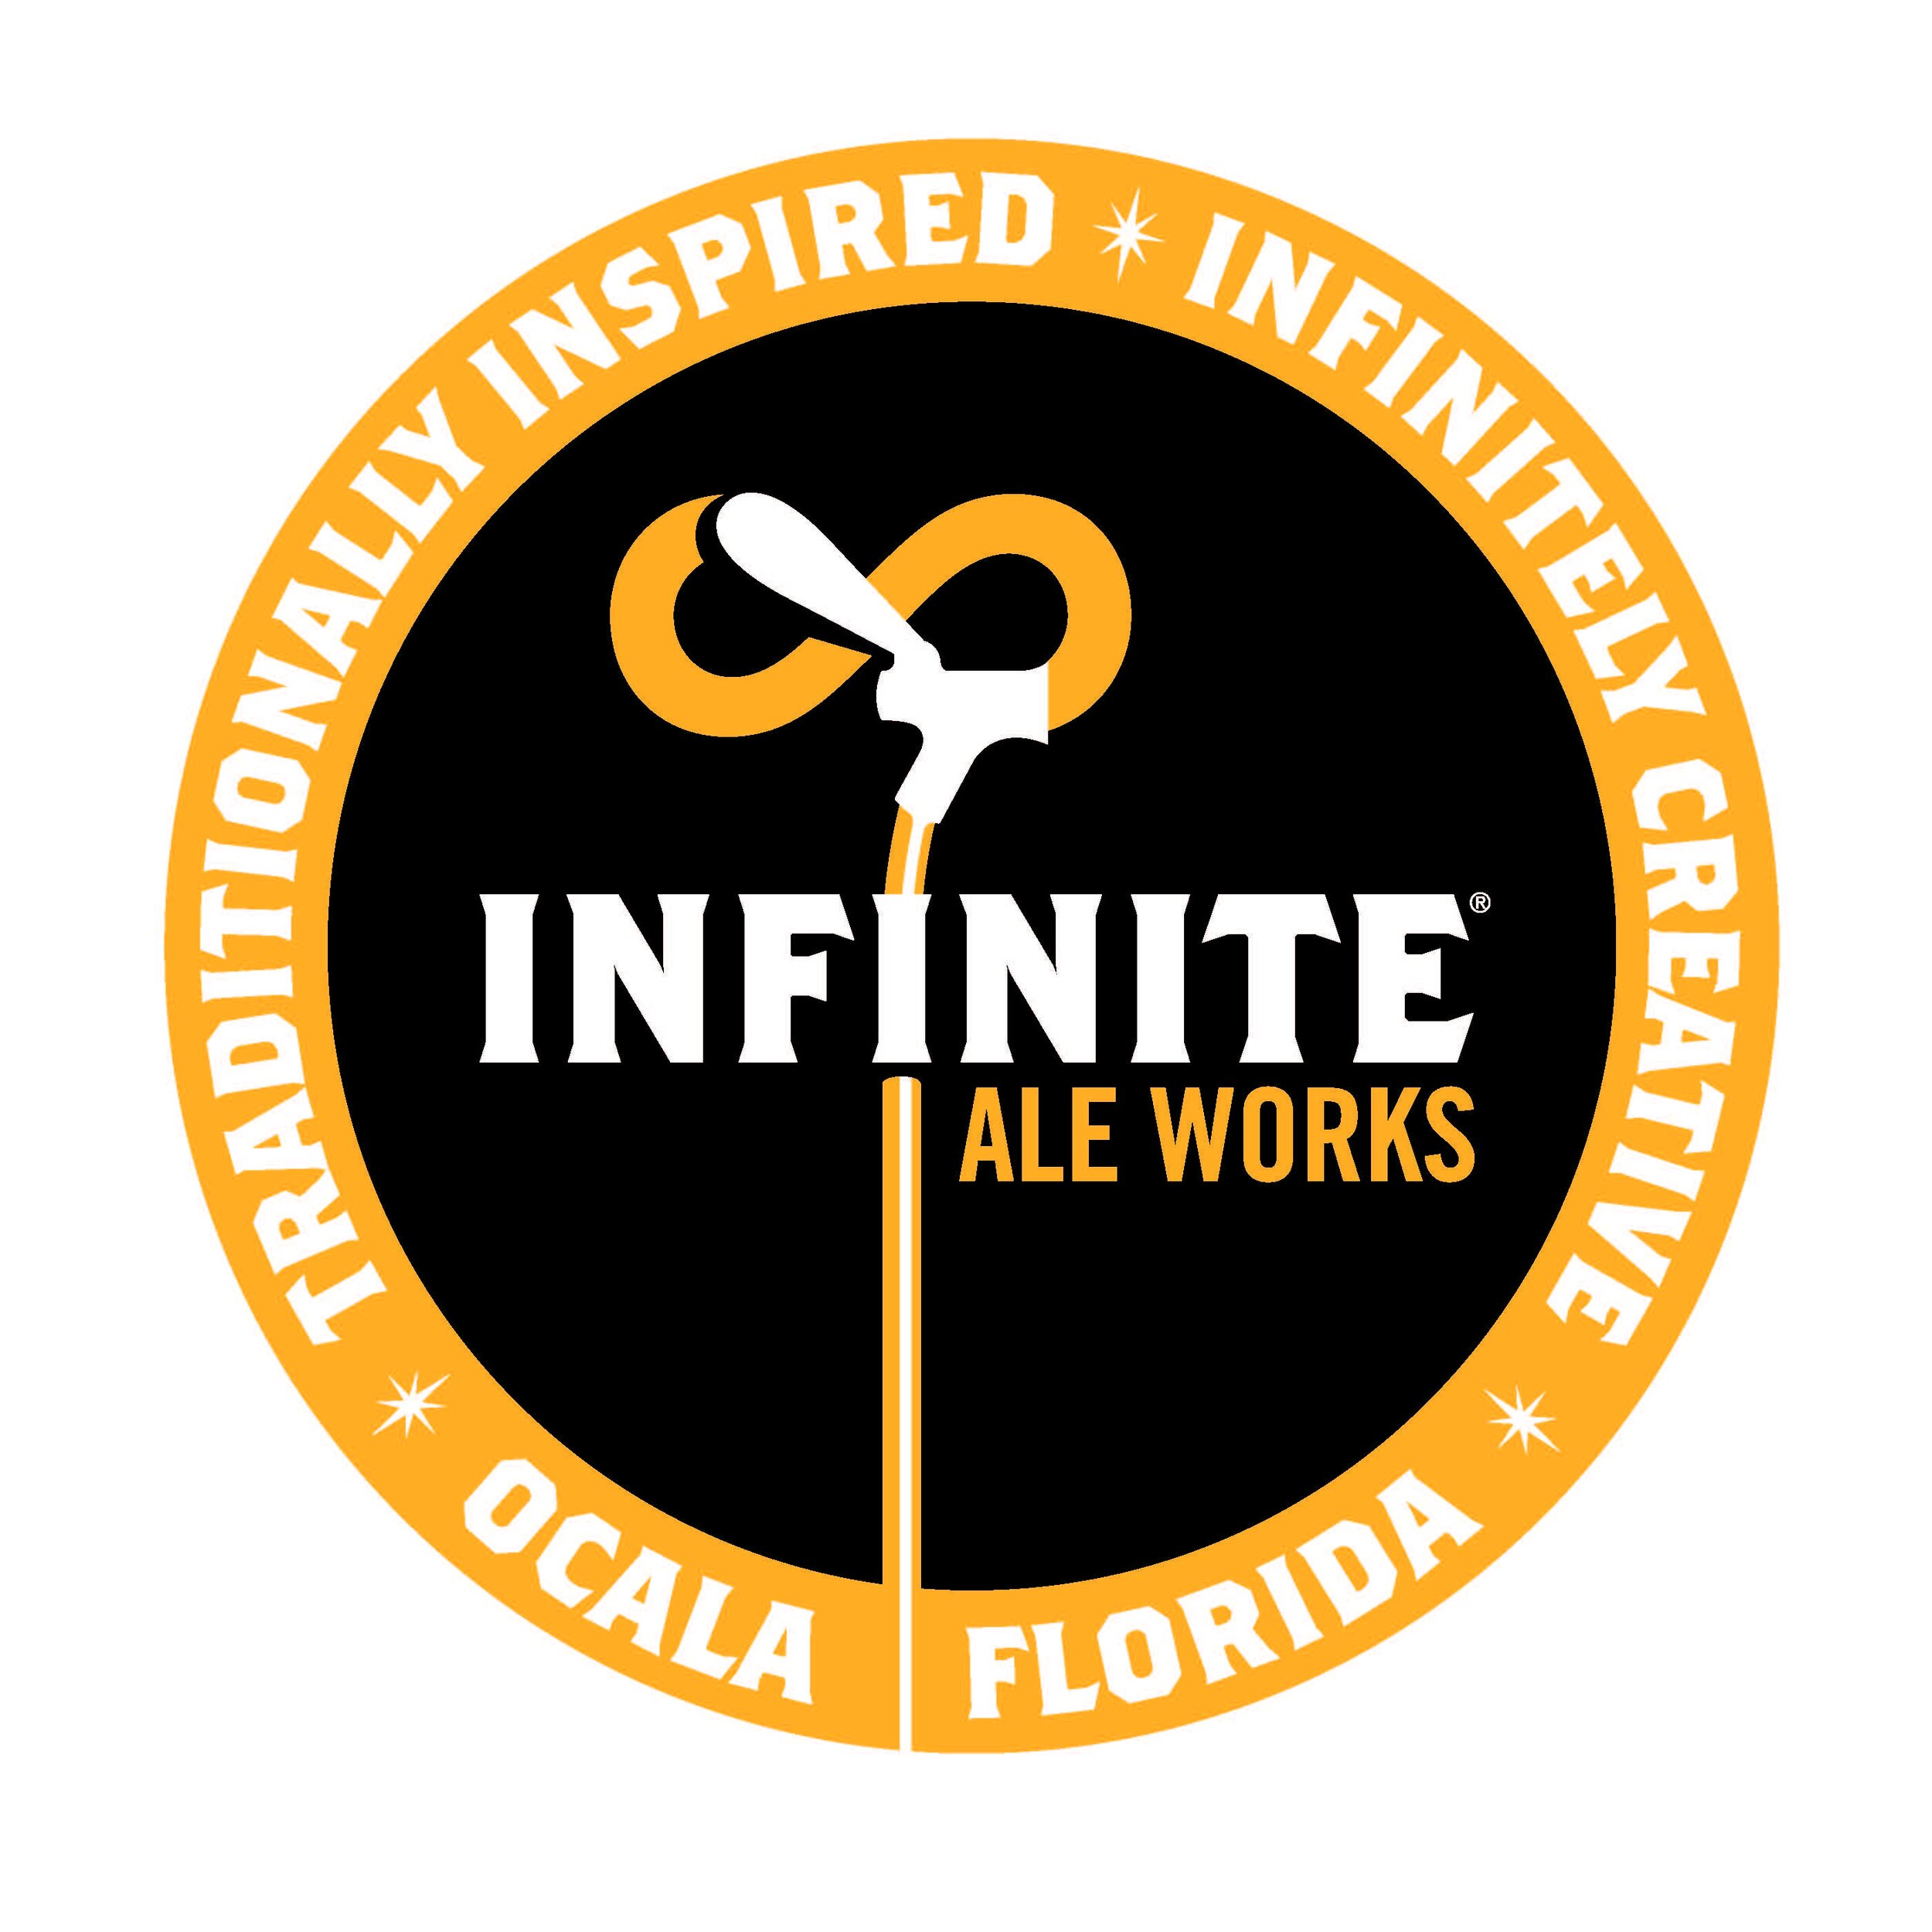 Infinite-circle logo.jpg